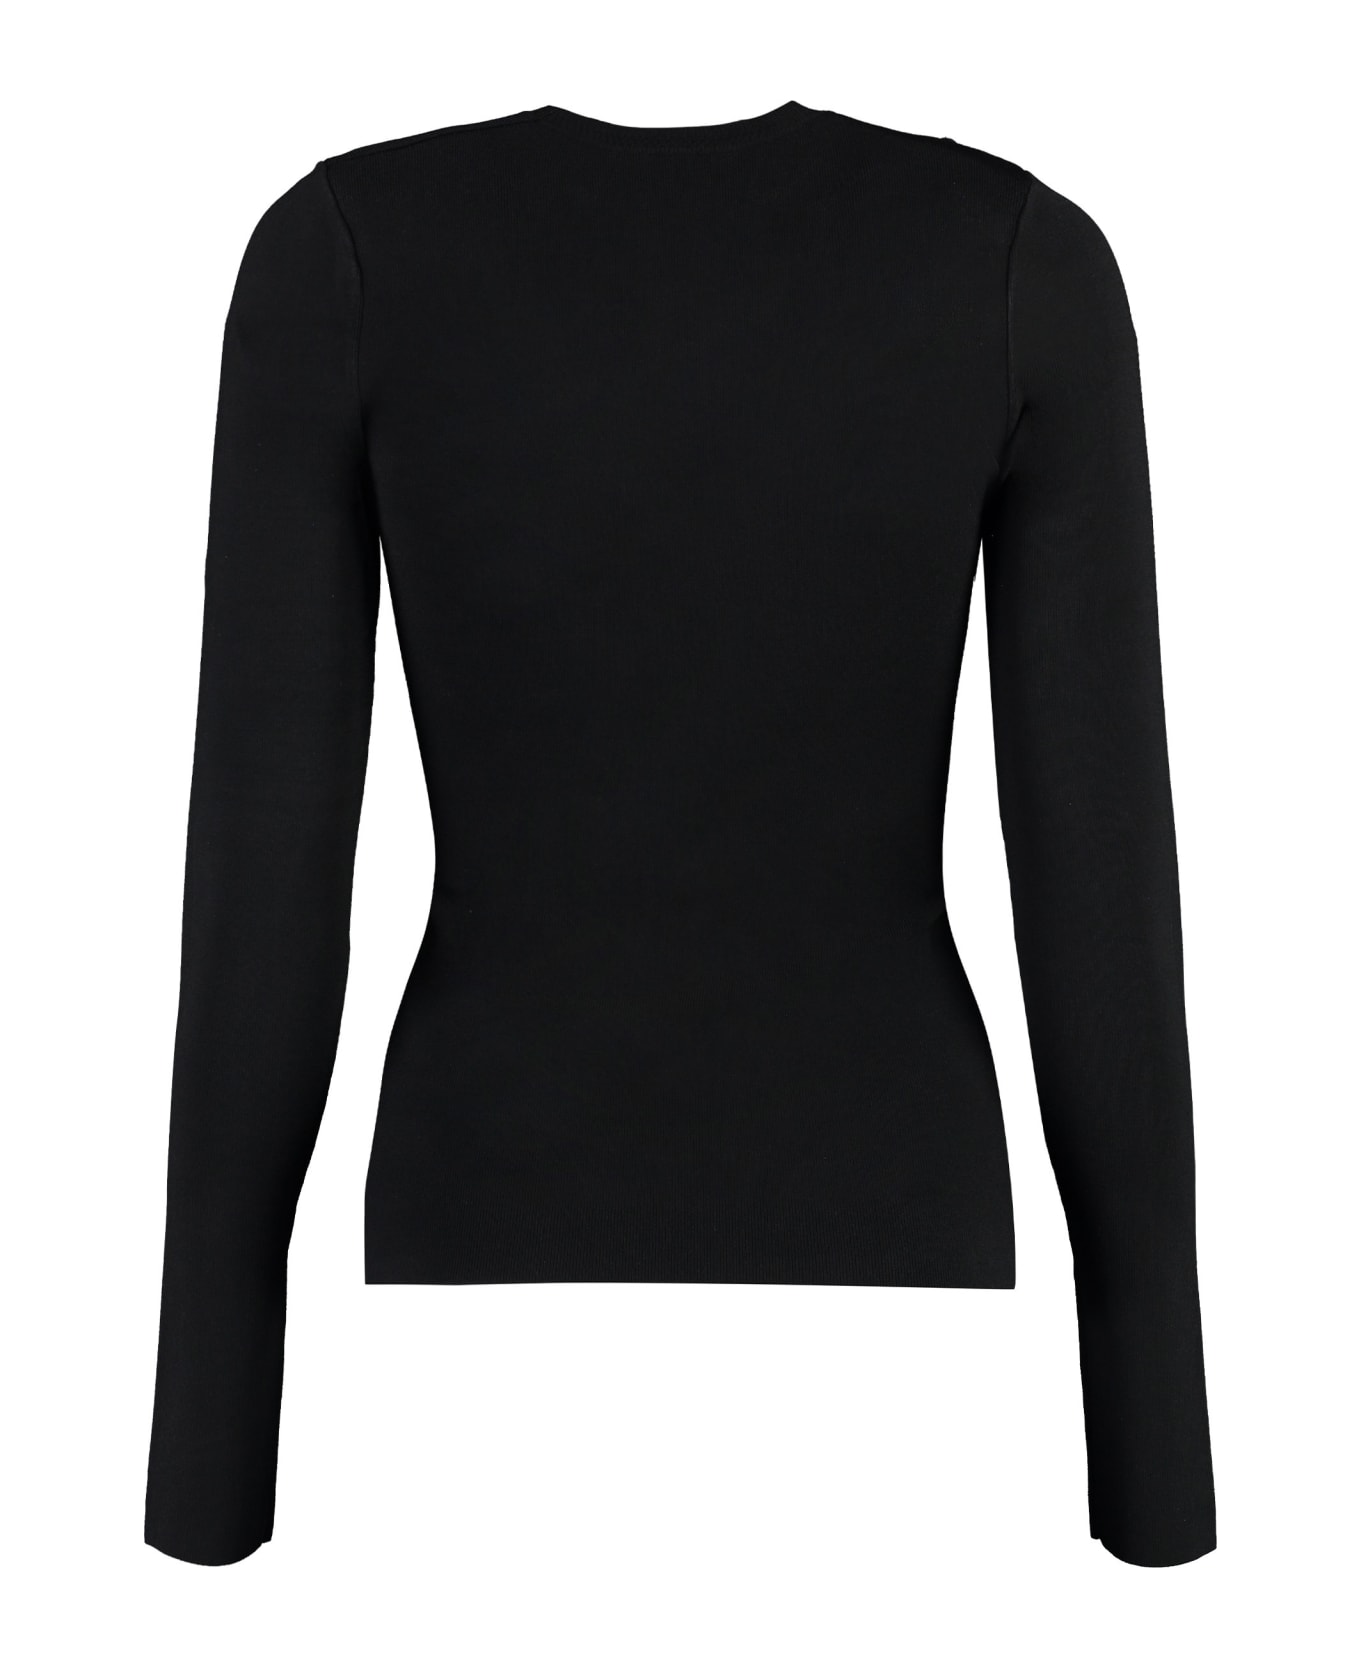 Victoria Beckham Knitted T-shirt - black